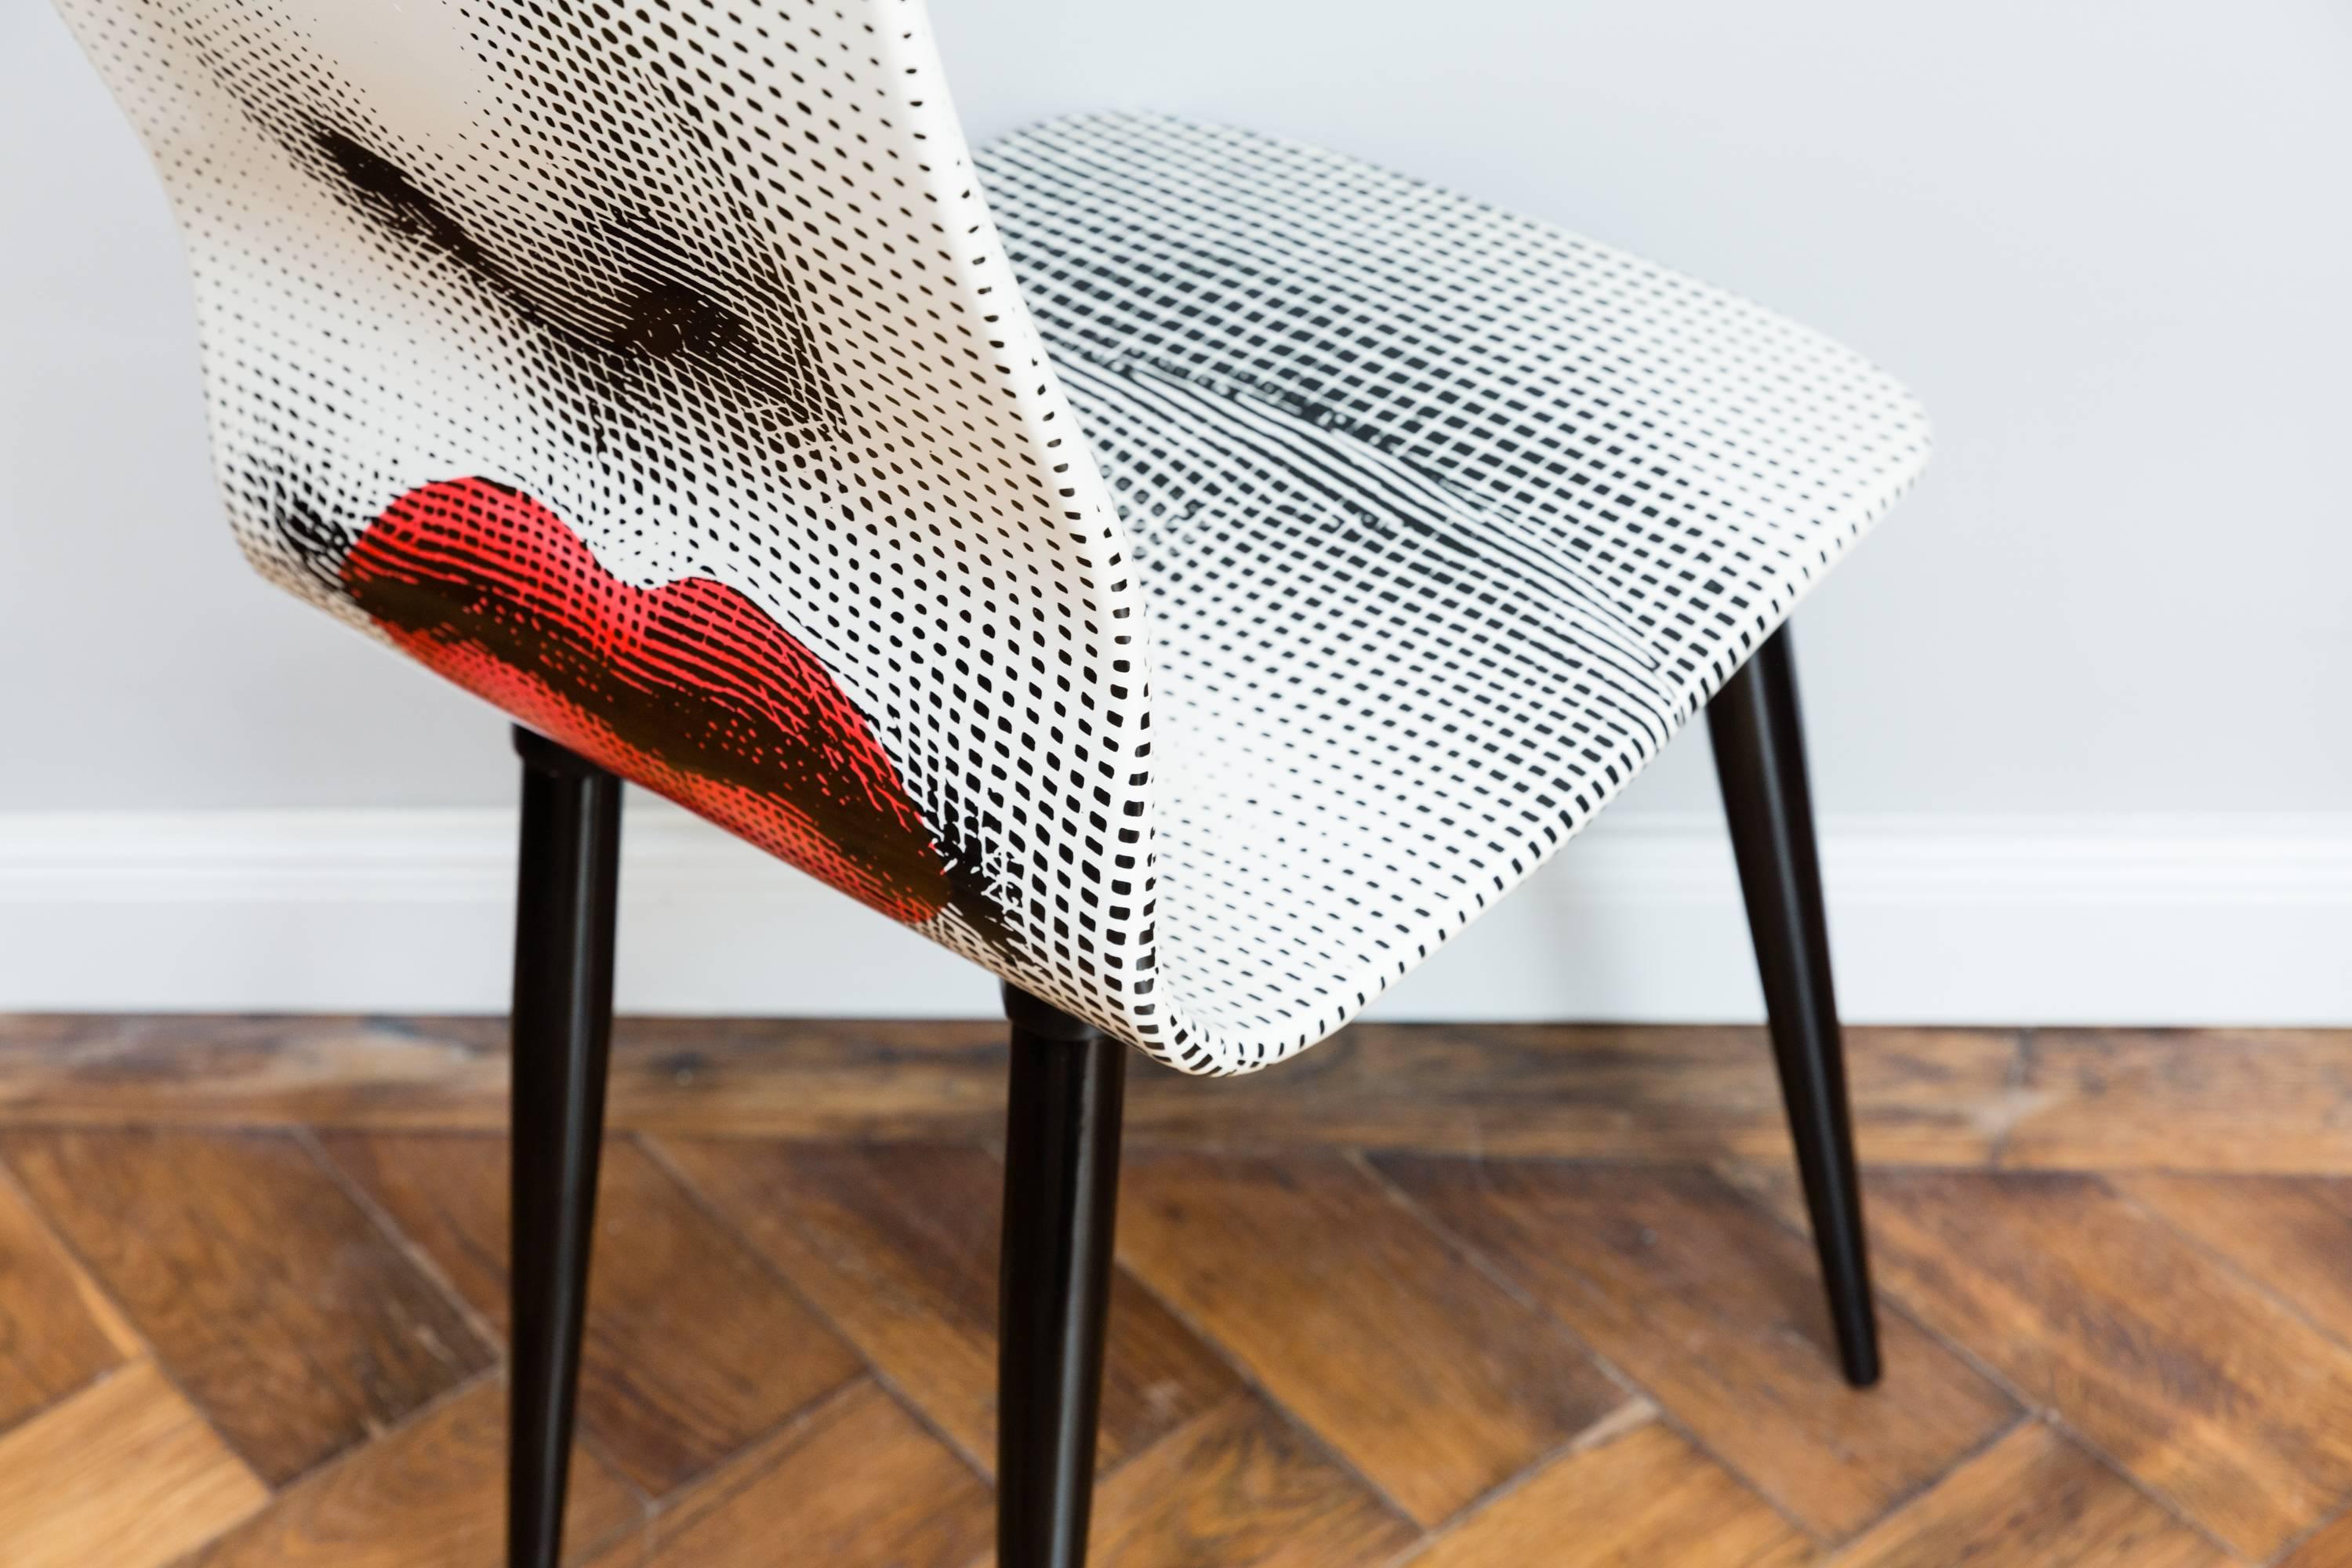 Pierro Fornasetti Bocca Chair, Italy Milano, 2006 In Good Condition For Sale In Munich, DE